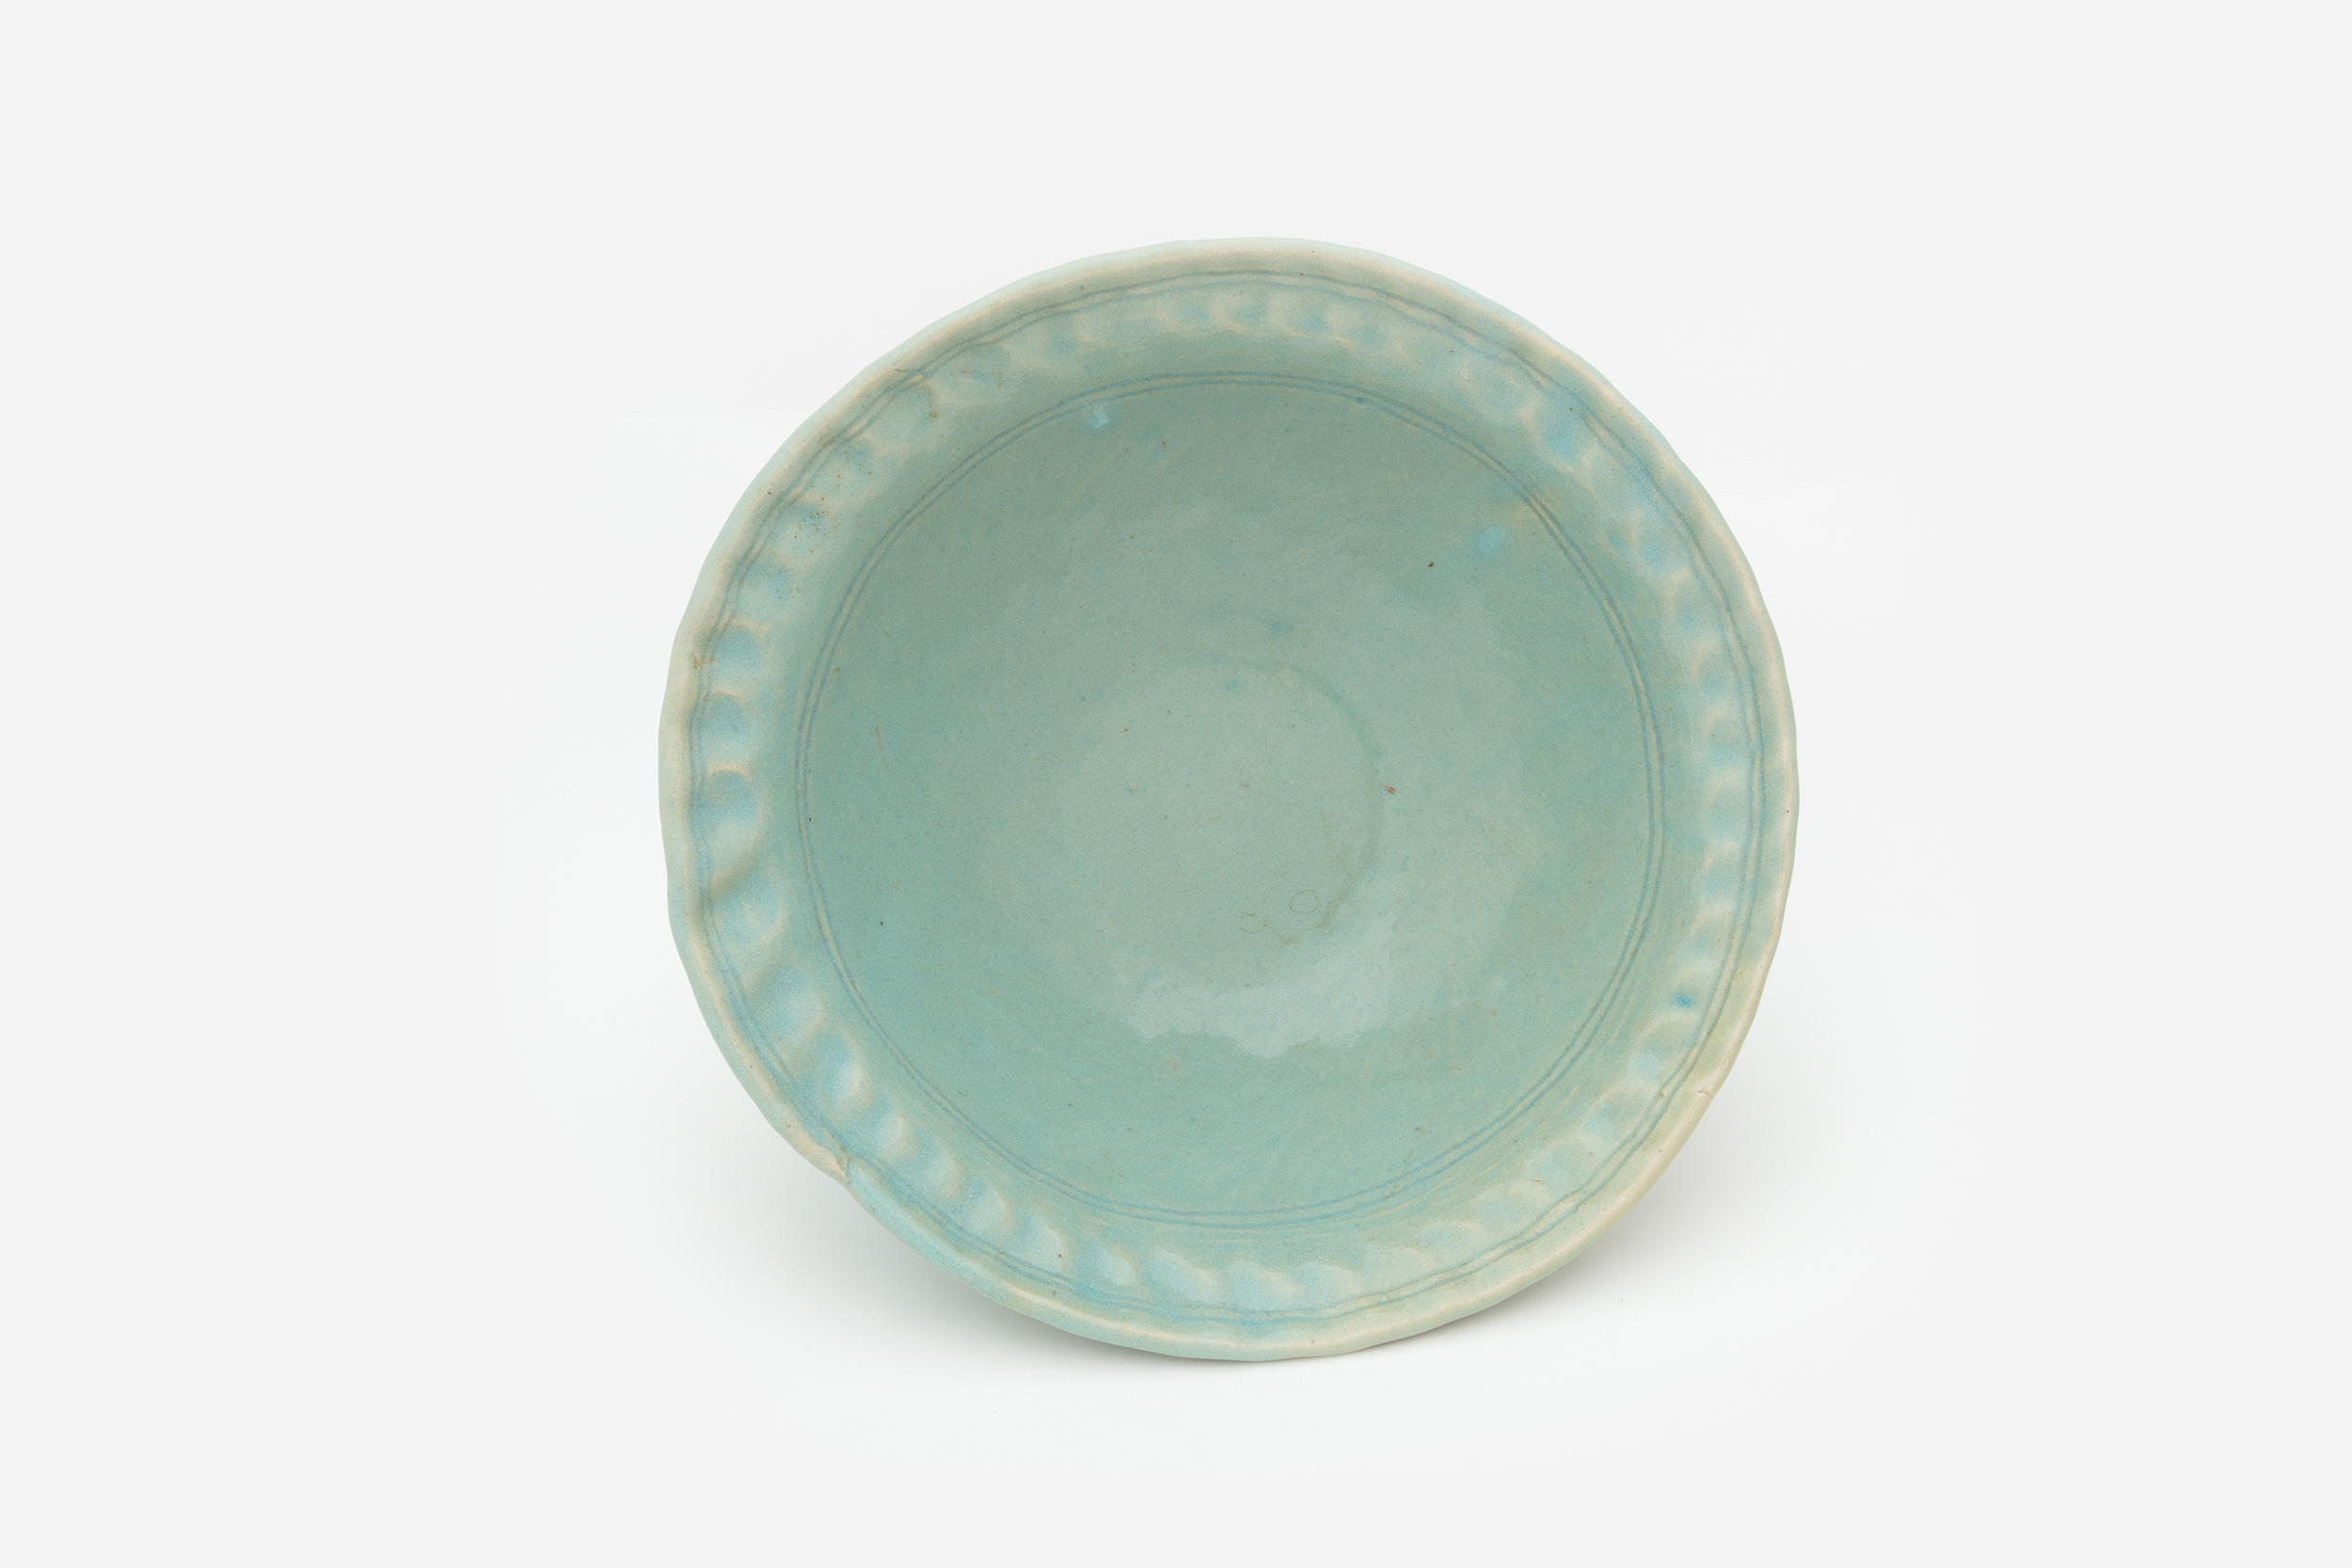 Hylton Nel - Celadon-type bowl, 22 April 2019